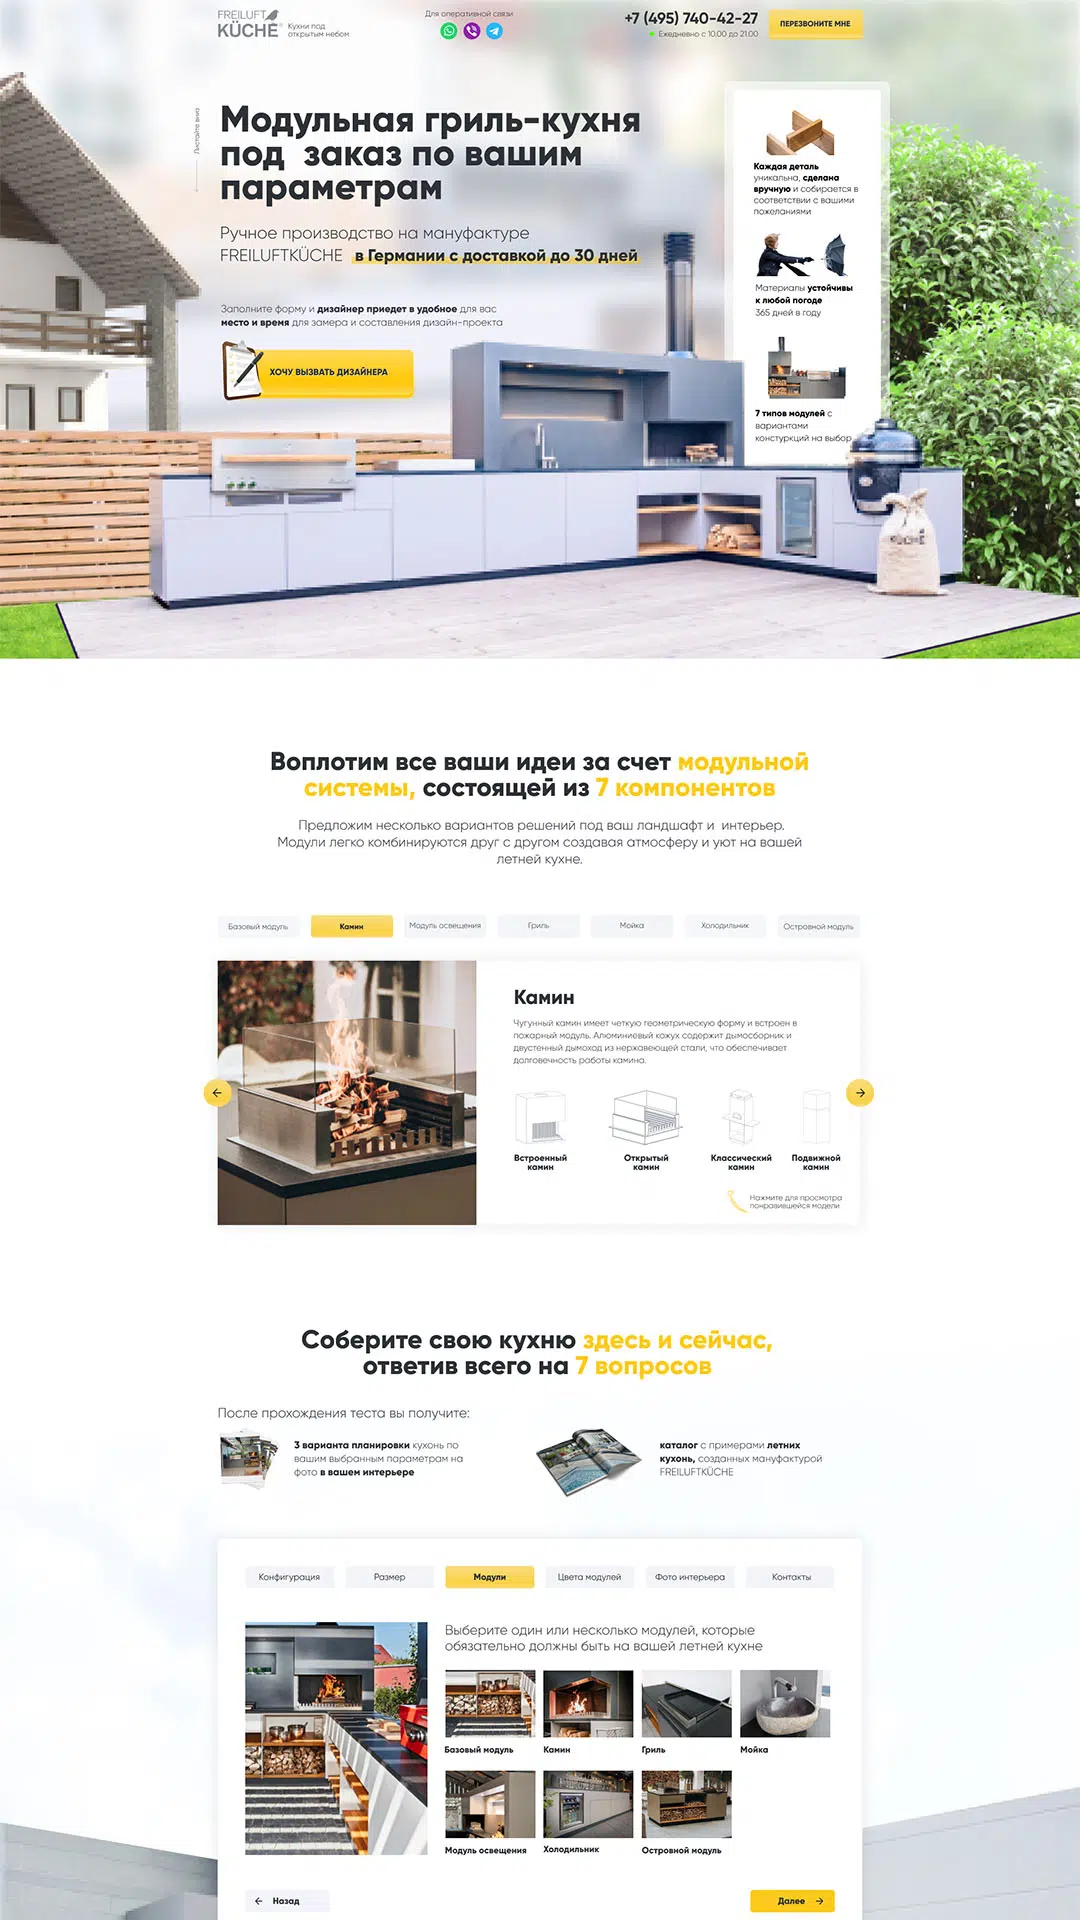 Лендинг для продажи модульных гриль-кухонь под заказ, портфолио на сайте pro-sites.ru